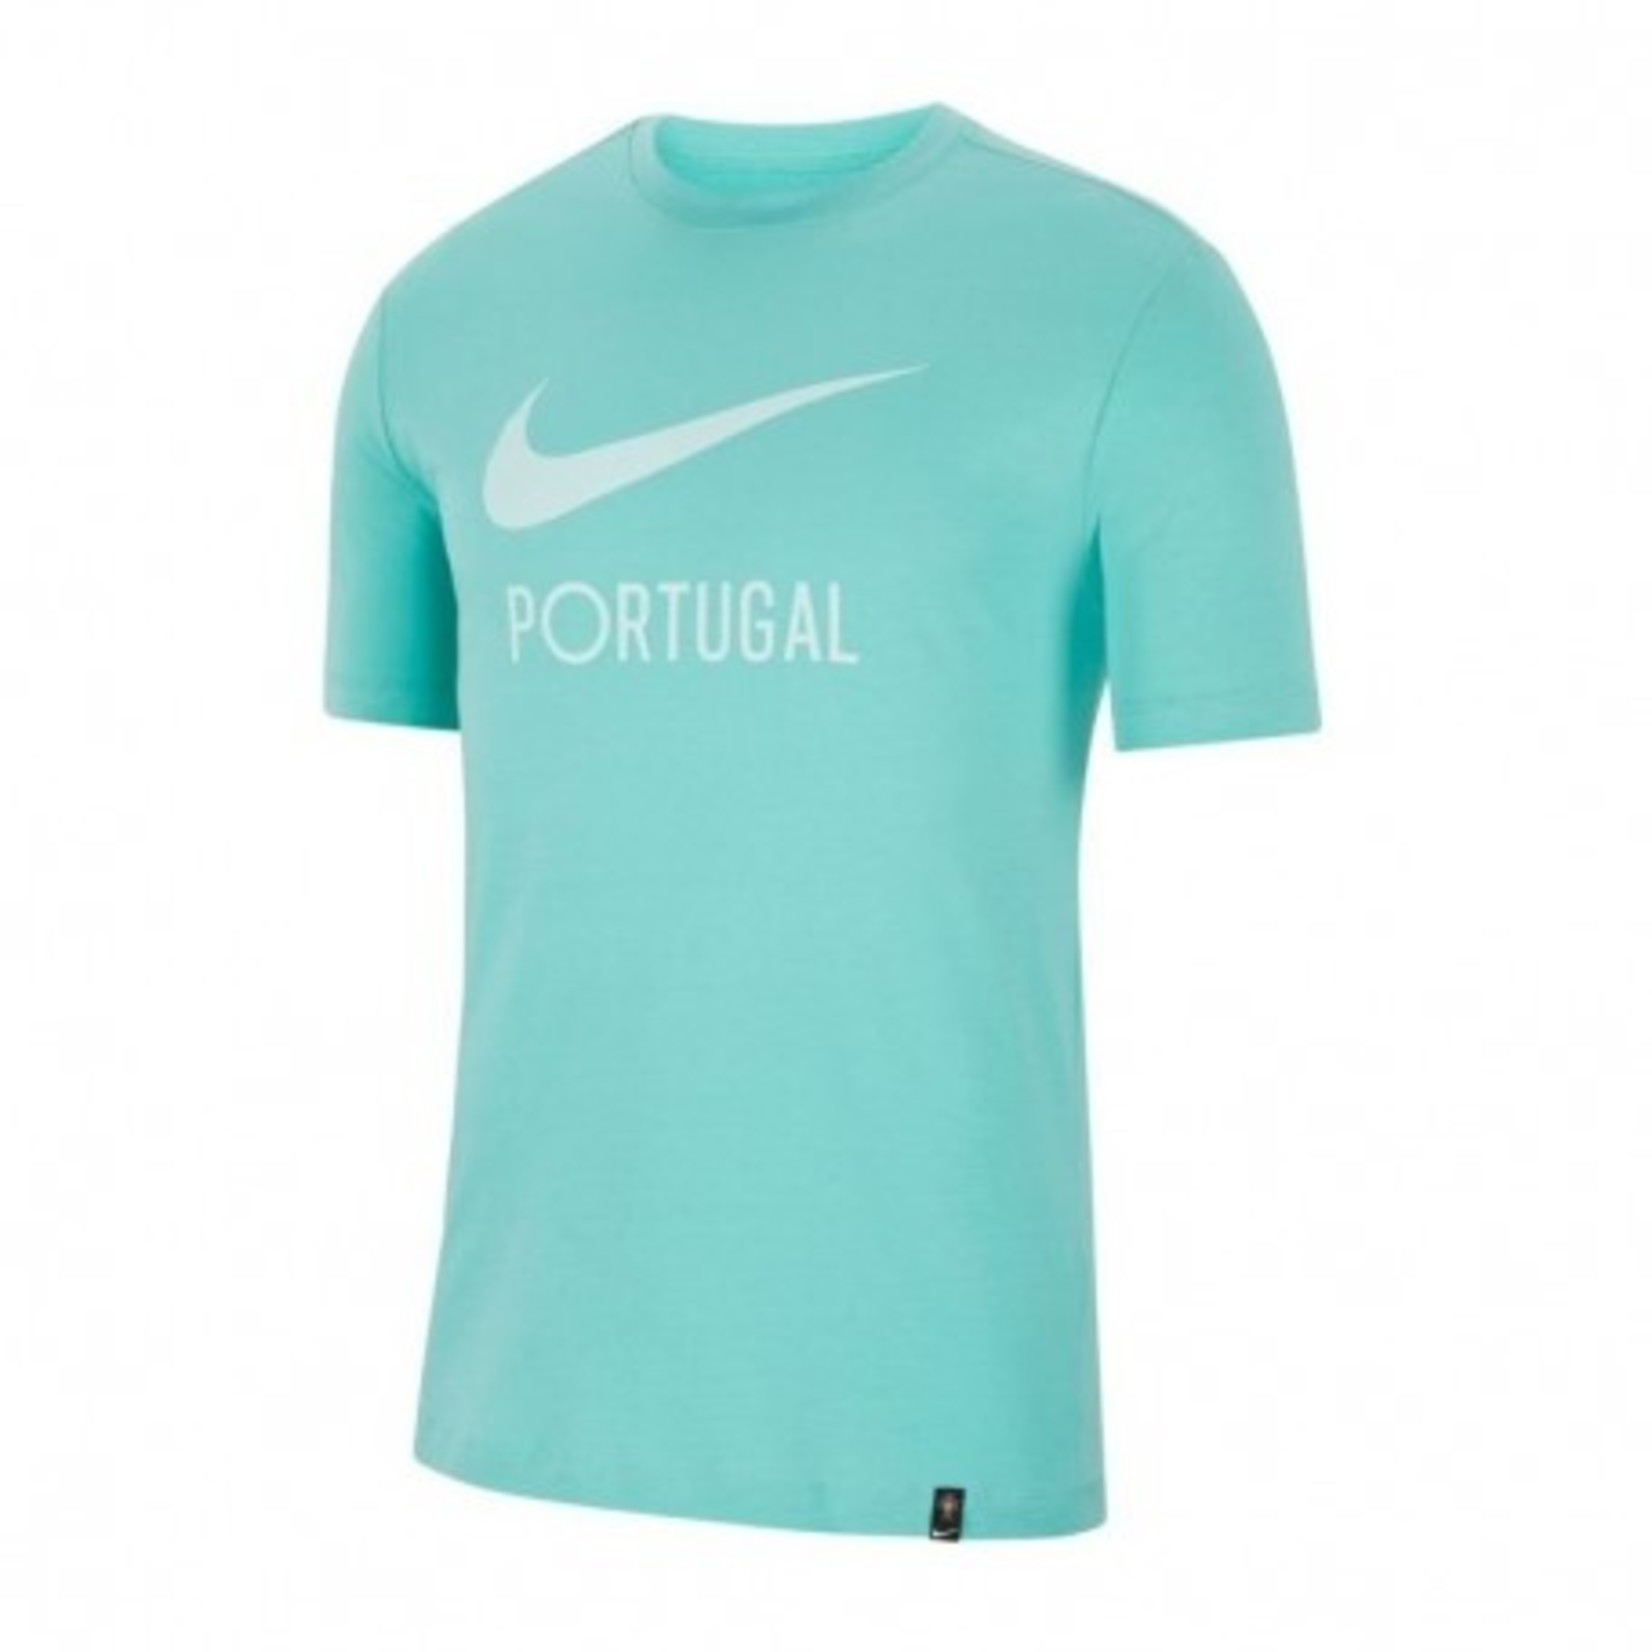 Nike PORTUGAL T SHIRT